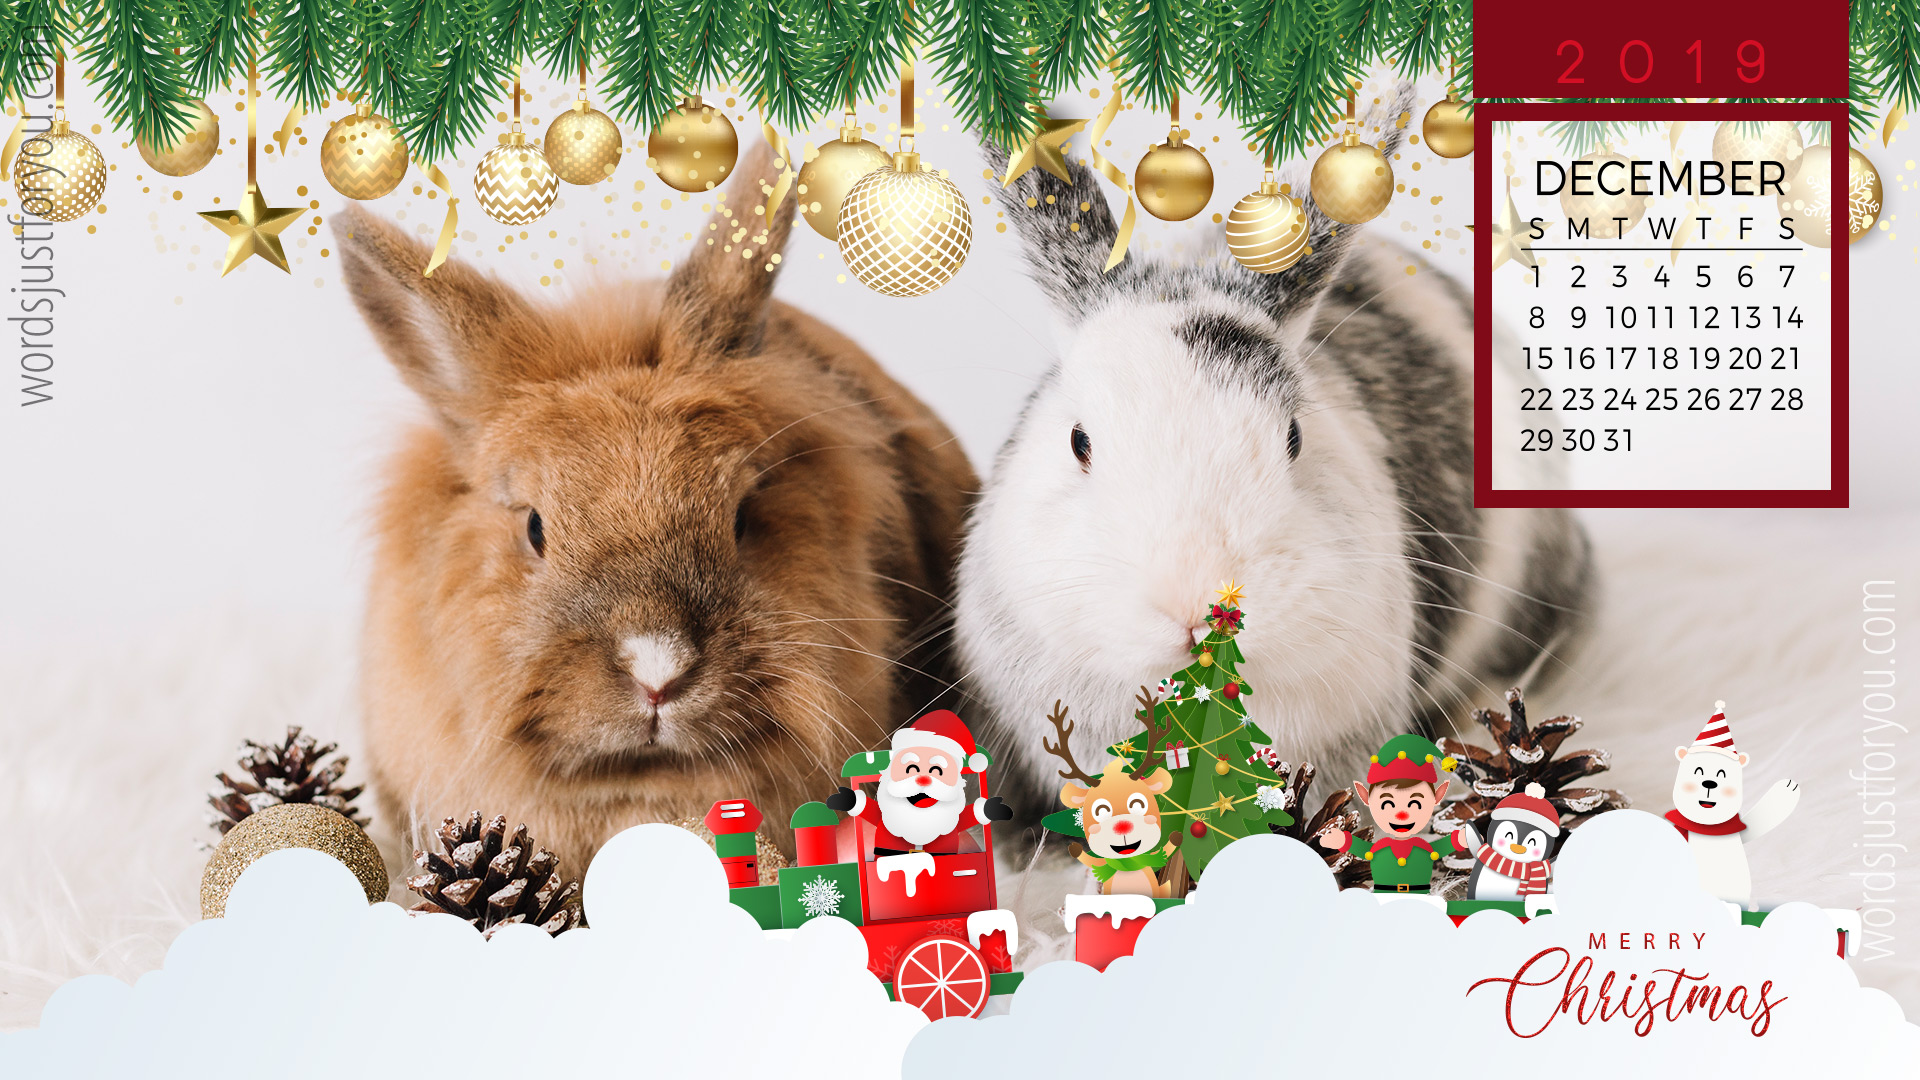 Cute Christmas Wallpaper With December 2019 Calendar - Snowshoe Hare - HD Wallpaper 